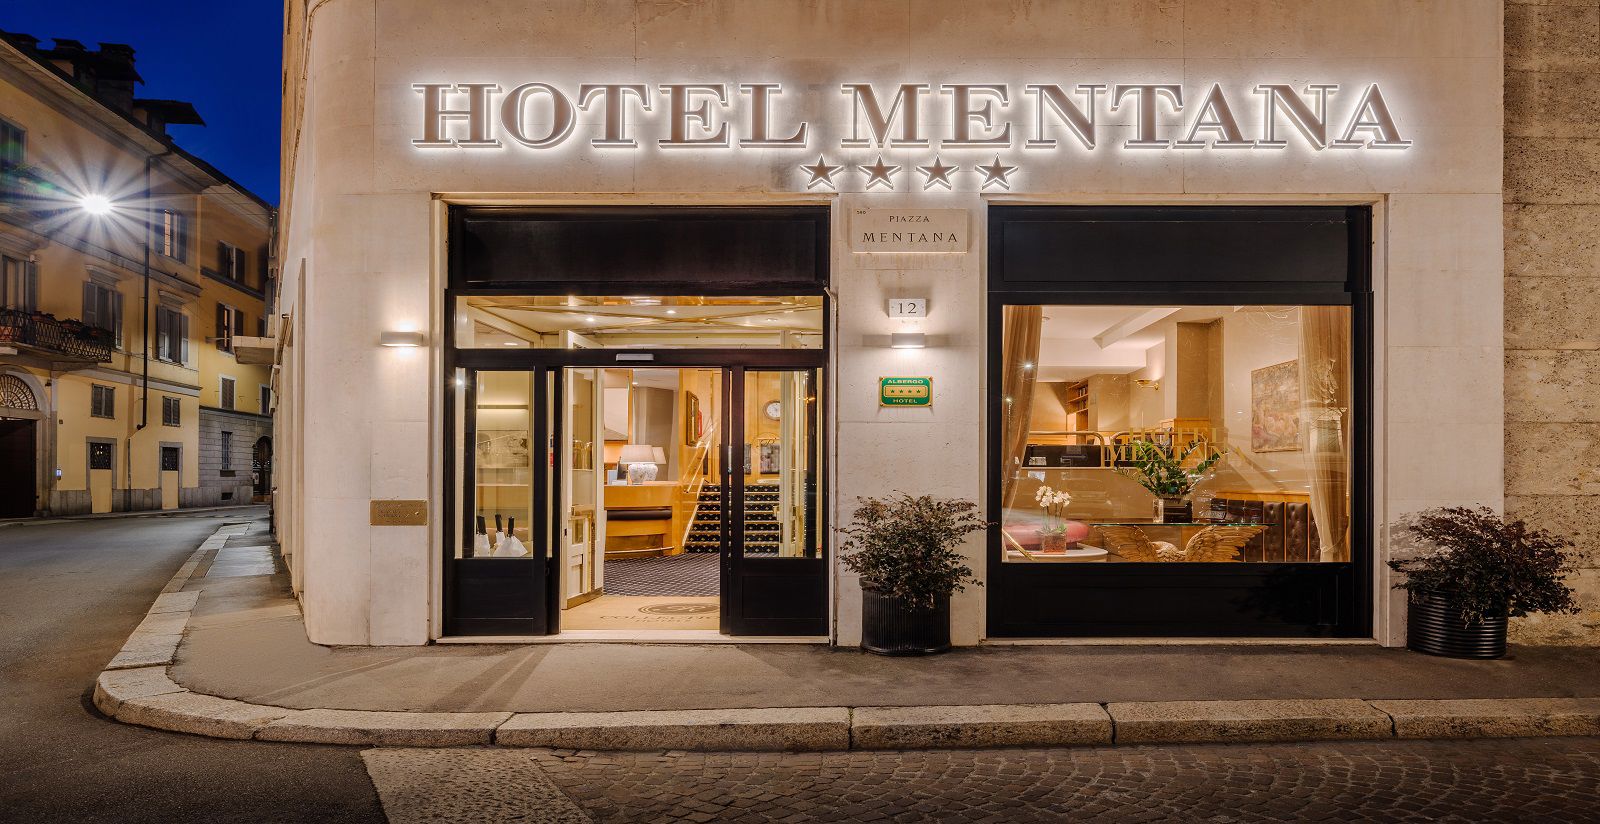 Hotel Mentana - Dove siamo 2